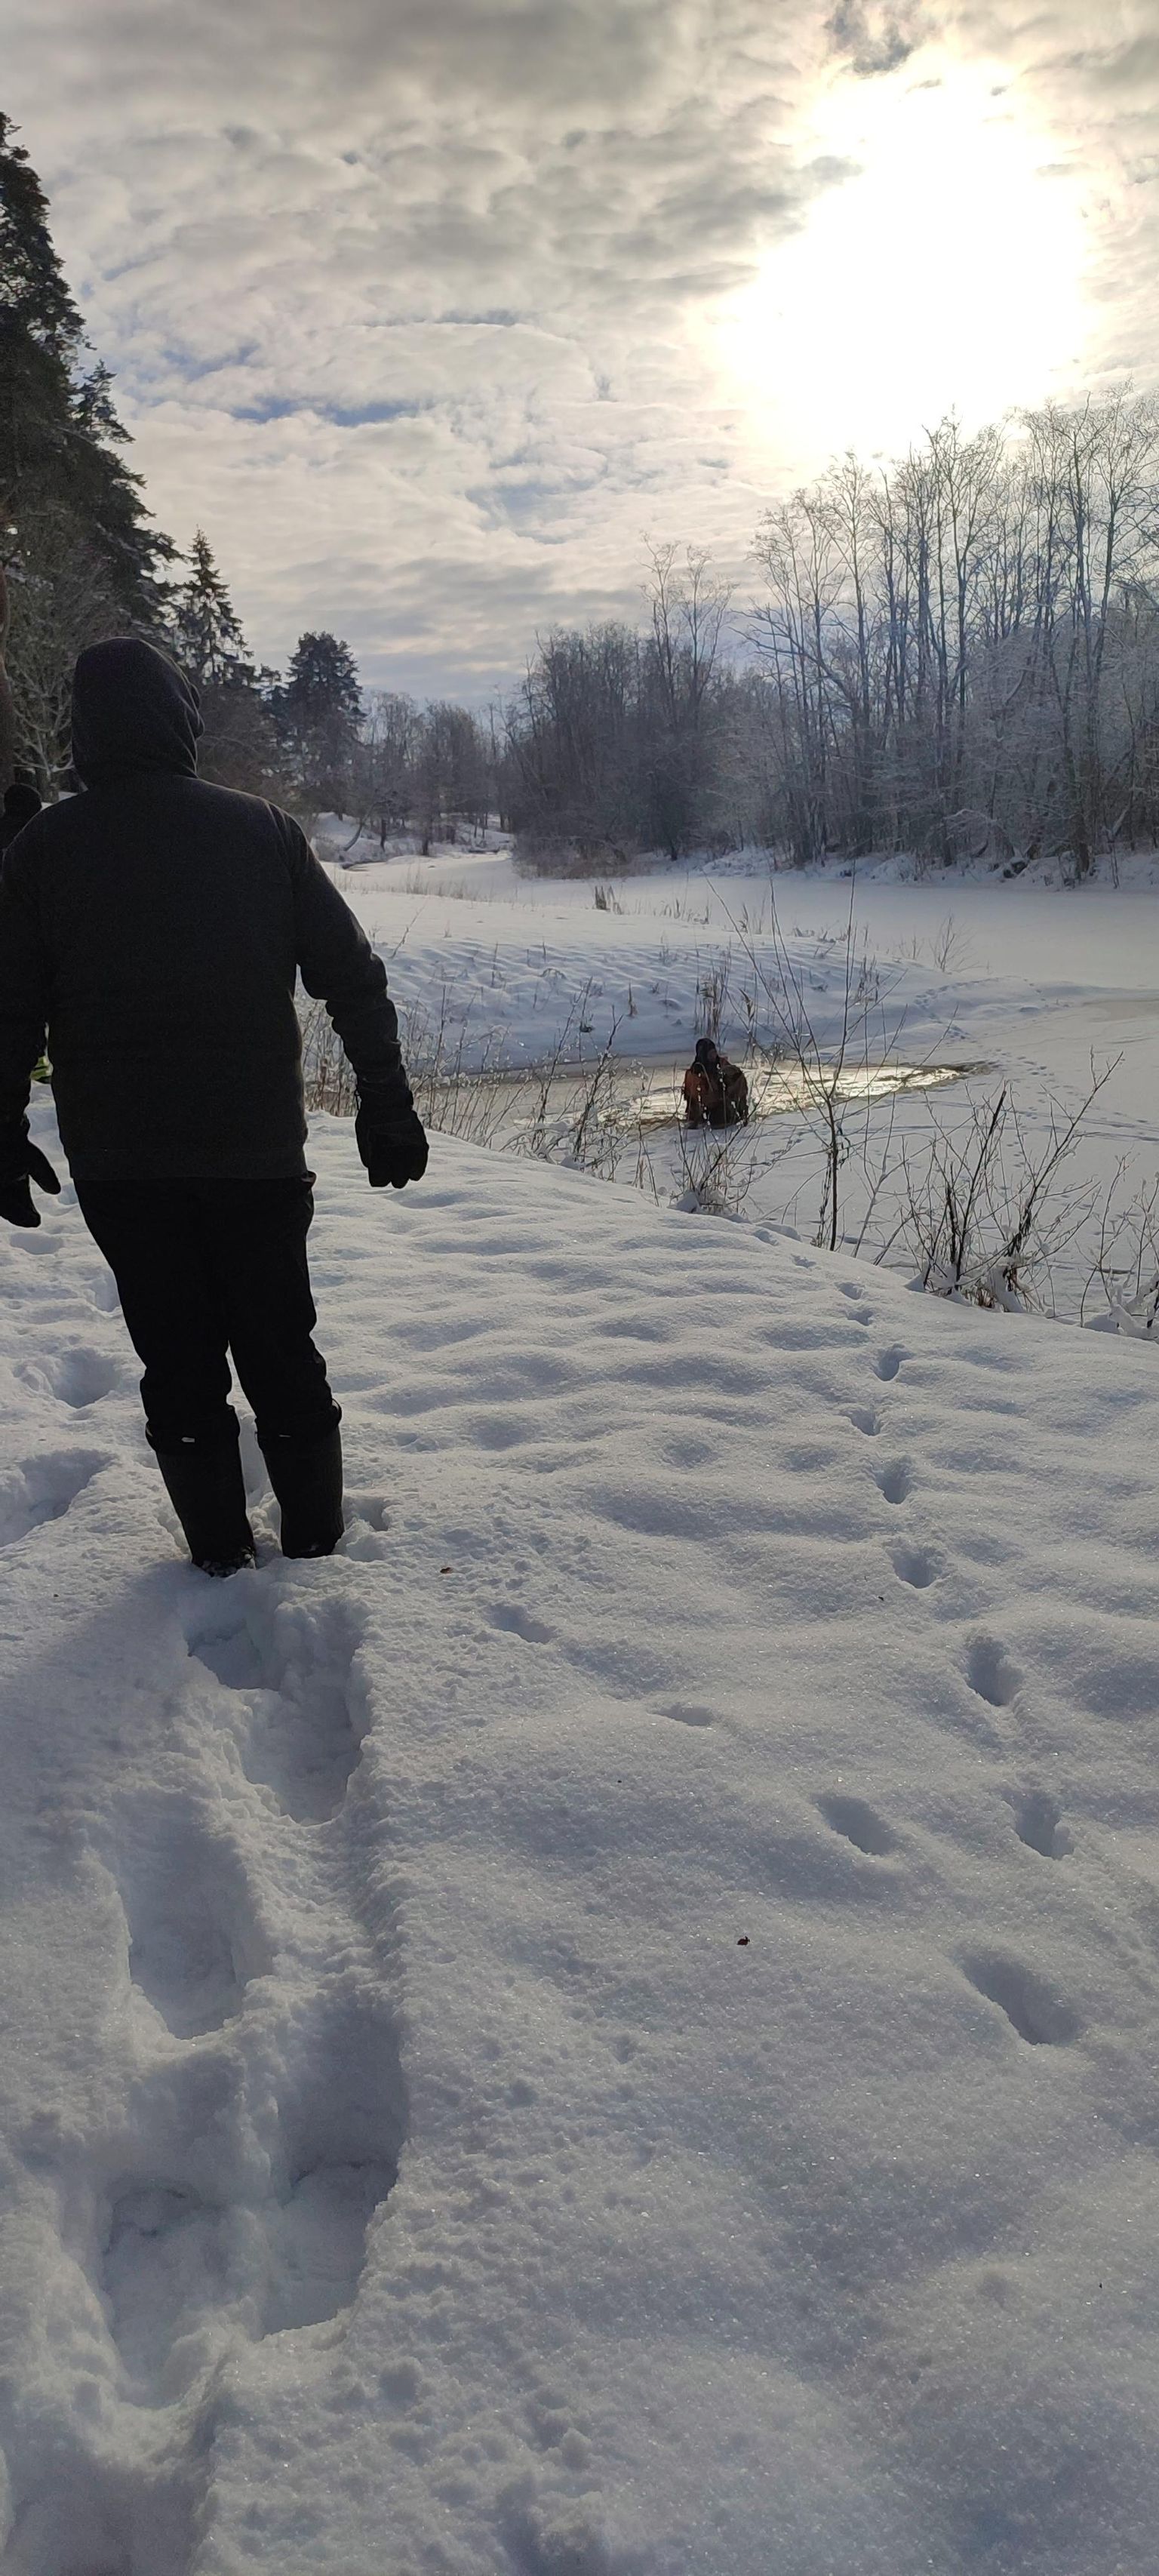 Случайный прохожий заметил провалившегося под лед пса и поступил правильно, когда позвал на помощь спасателей.